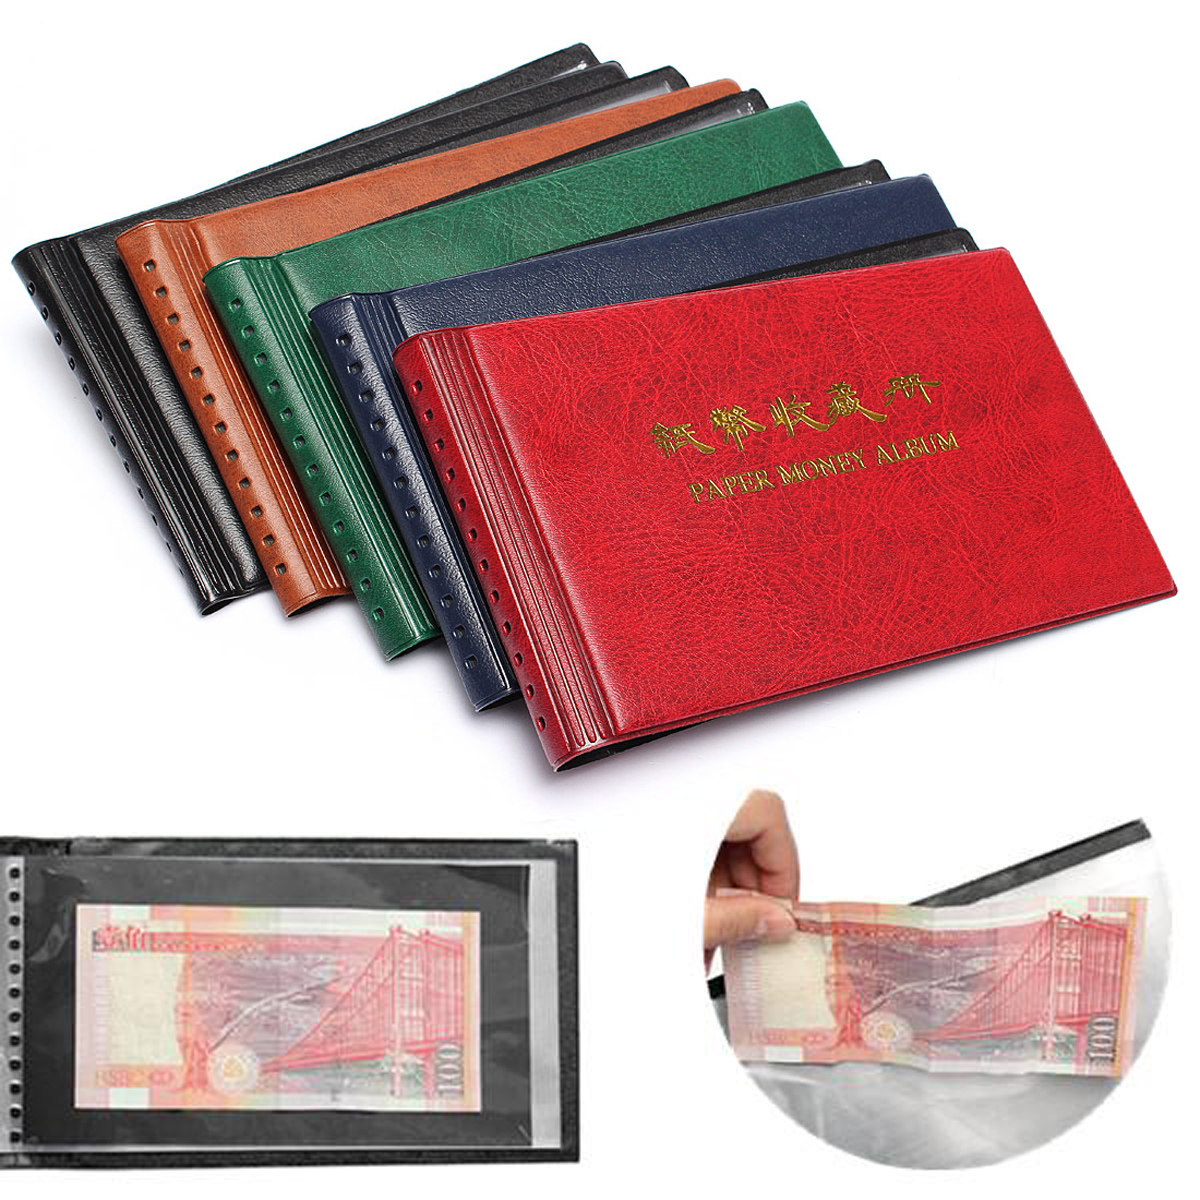 

Бумажные деньги Валюта Держатель для банкнот Коллекция Хранение Фотоальбом Сбор 20 корзин для хранения банкнот